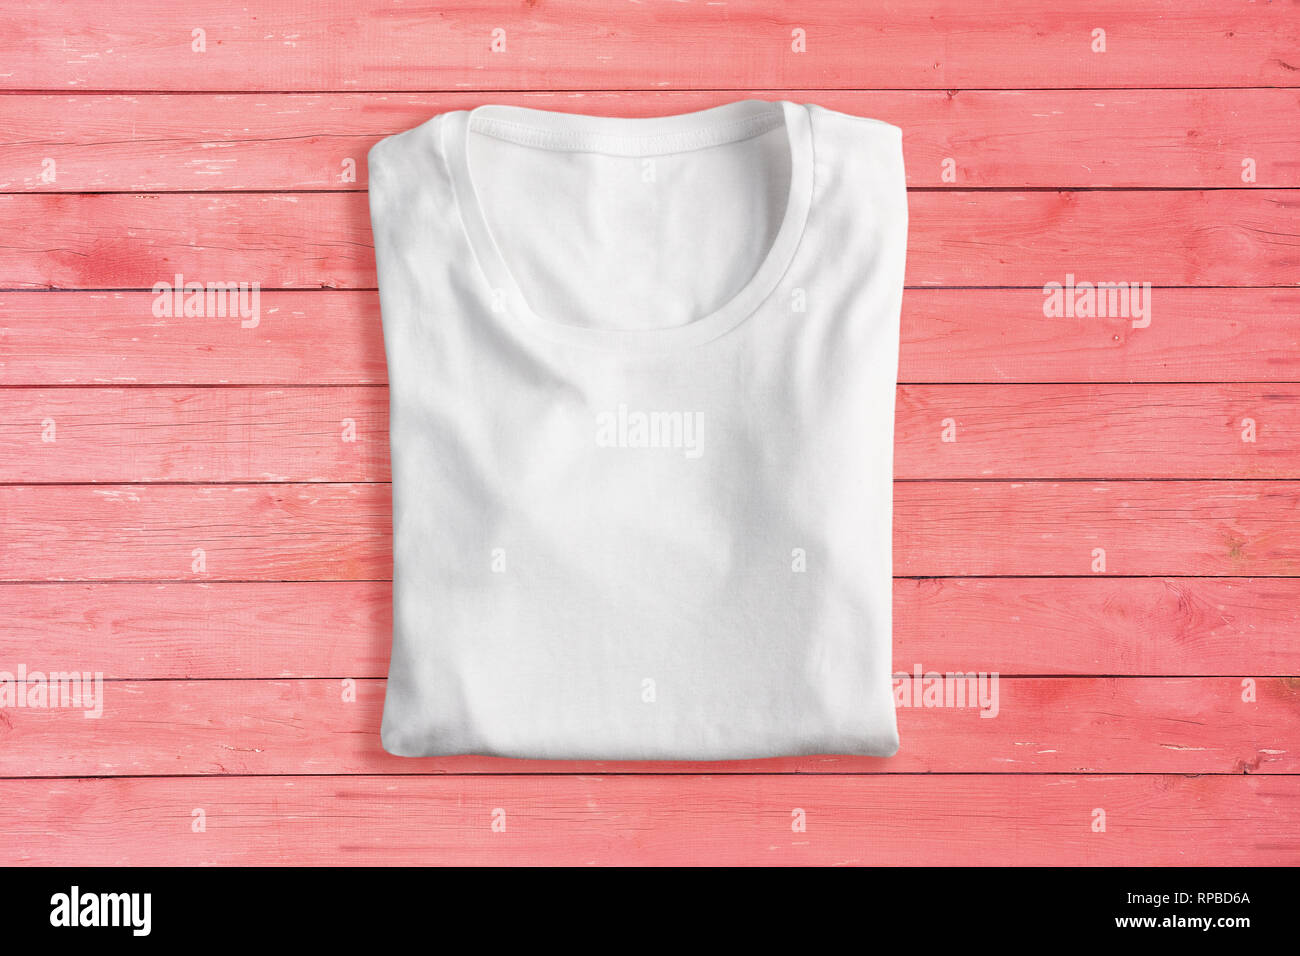 White folded t-shirt on pink background Stock Photo